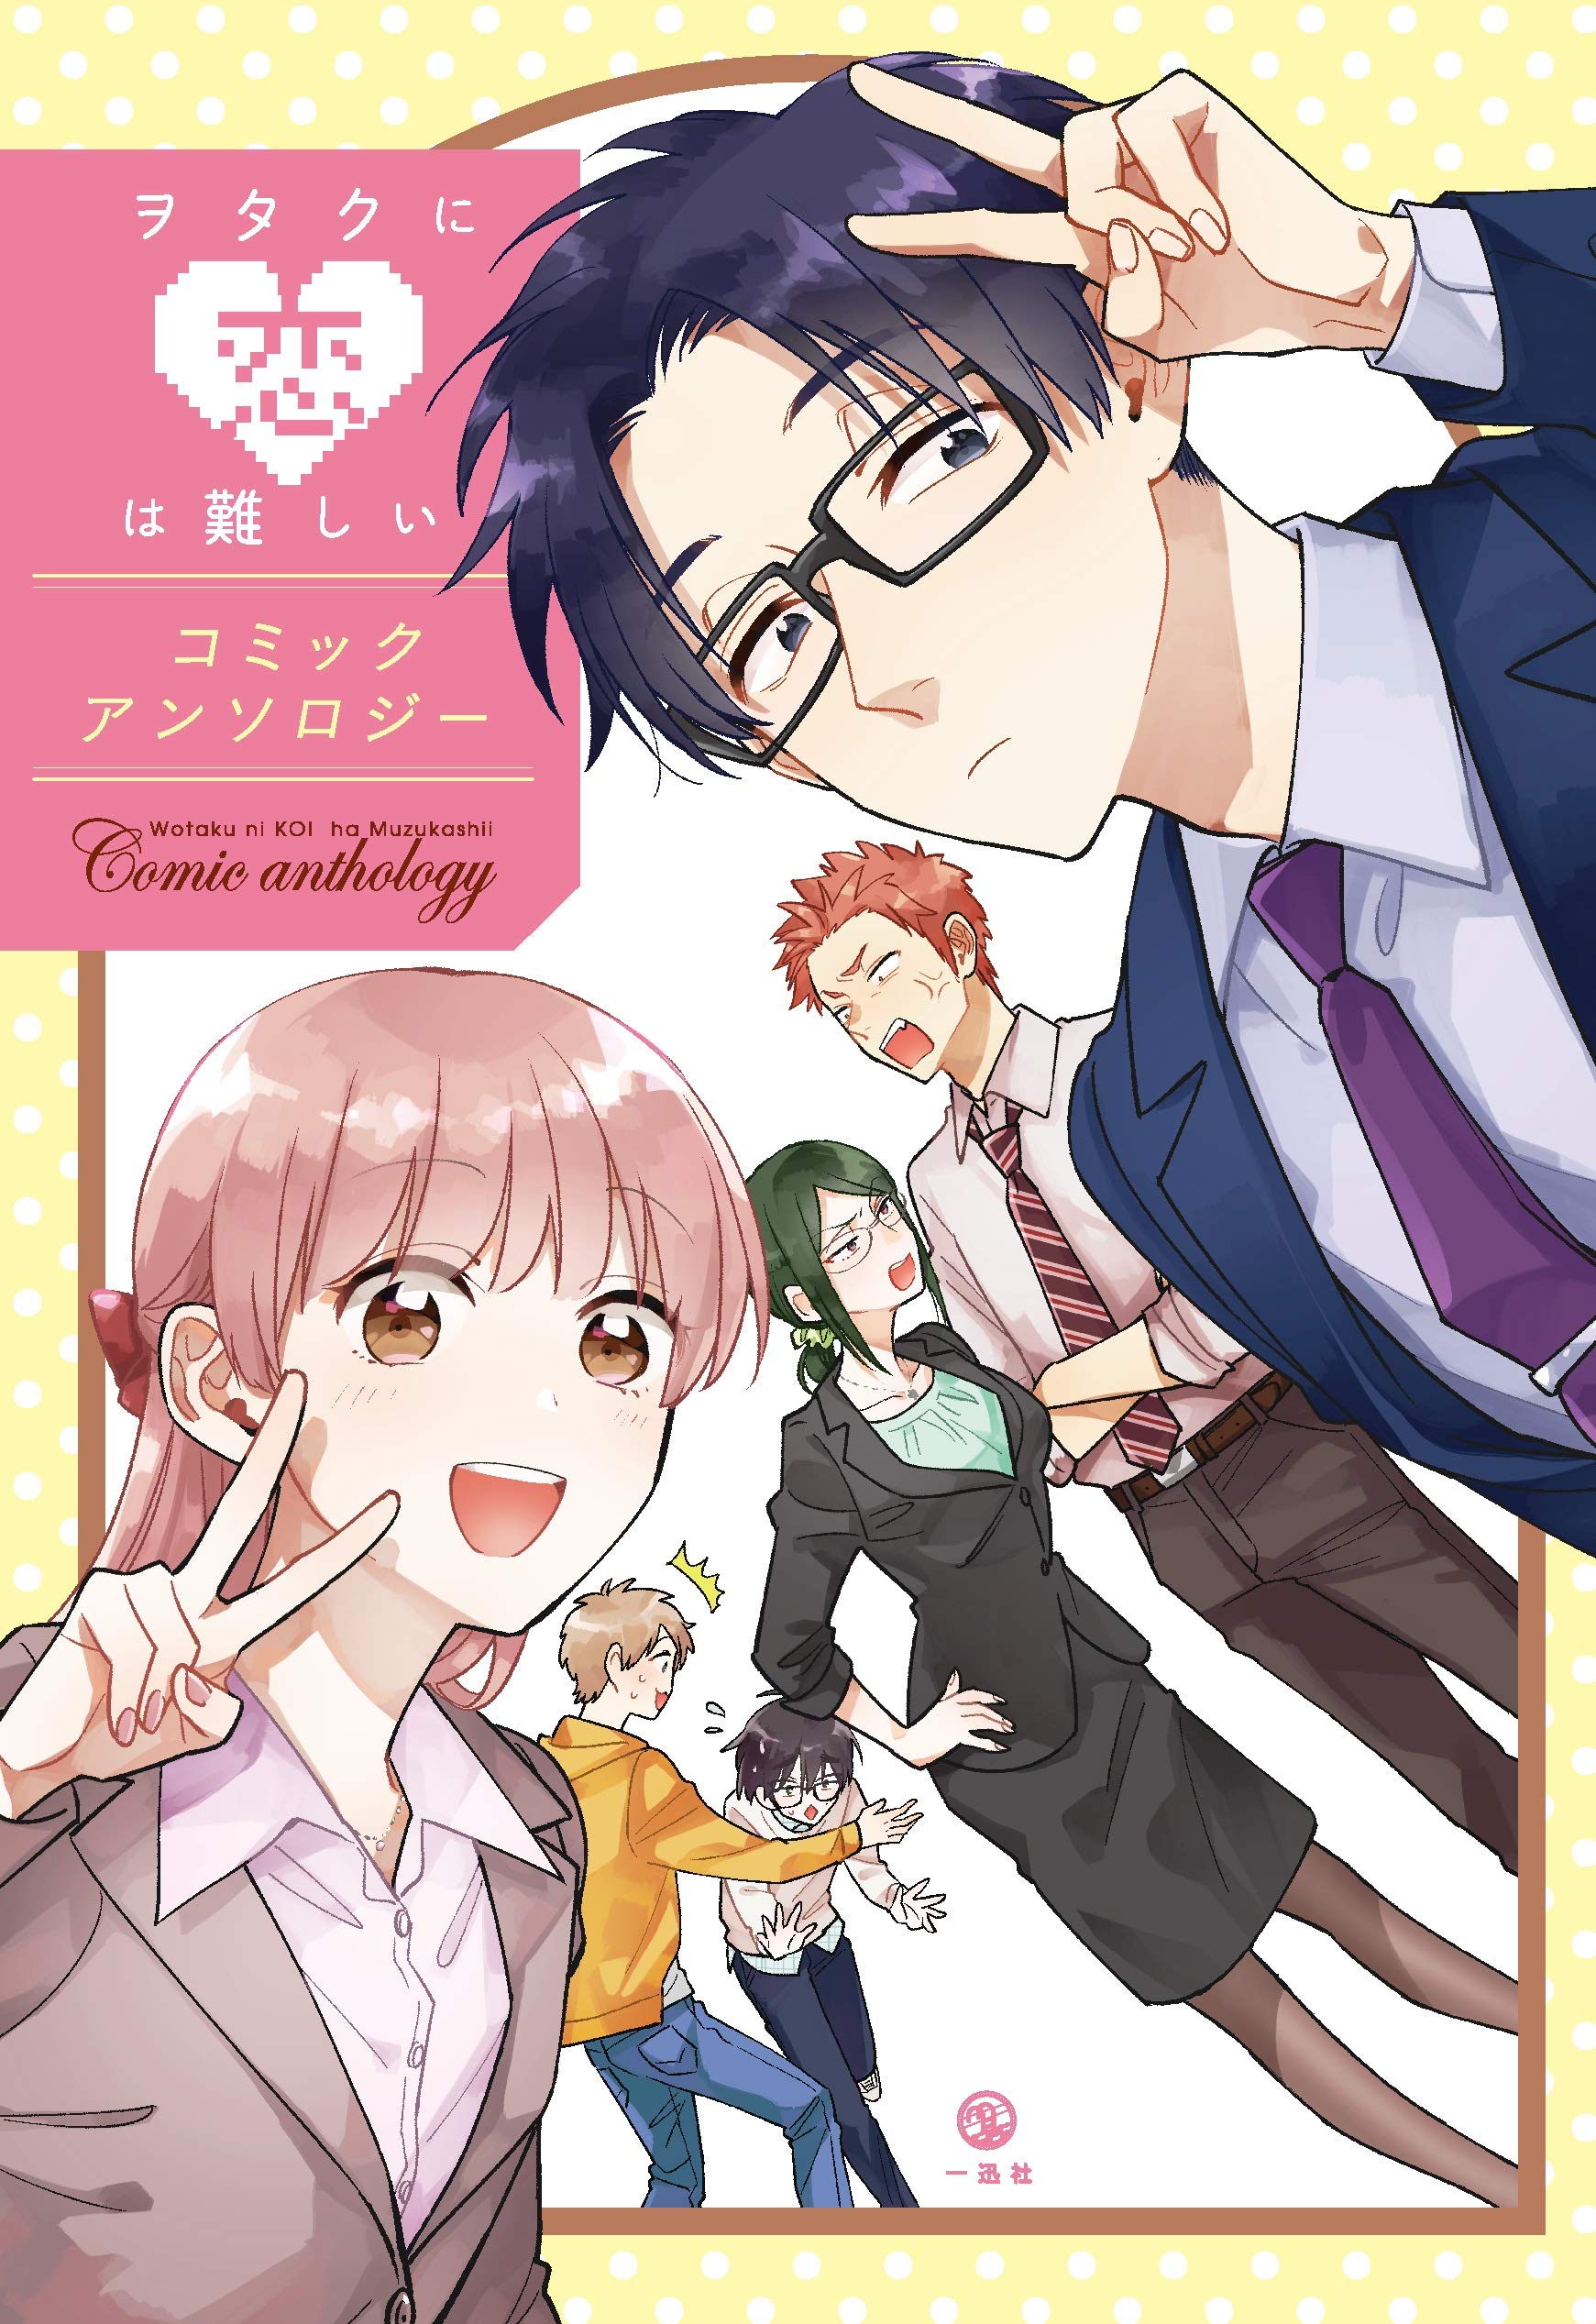 Wotaku ni Koi wa Muzukashii Vol.10 (Love Is Hard for Otaku) - ISBN